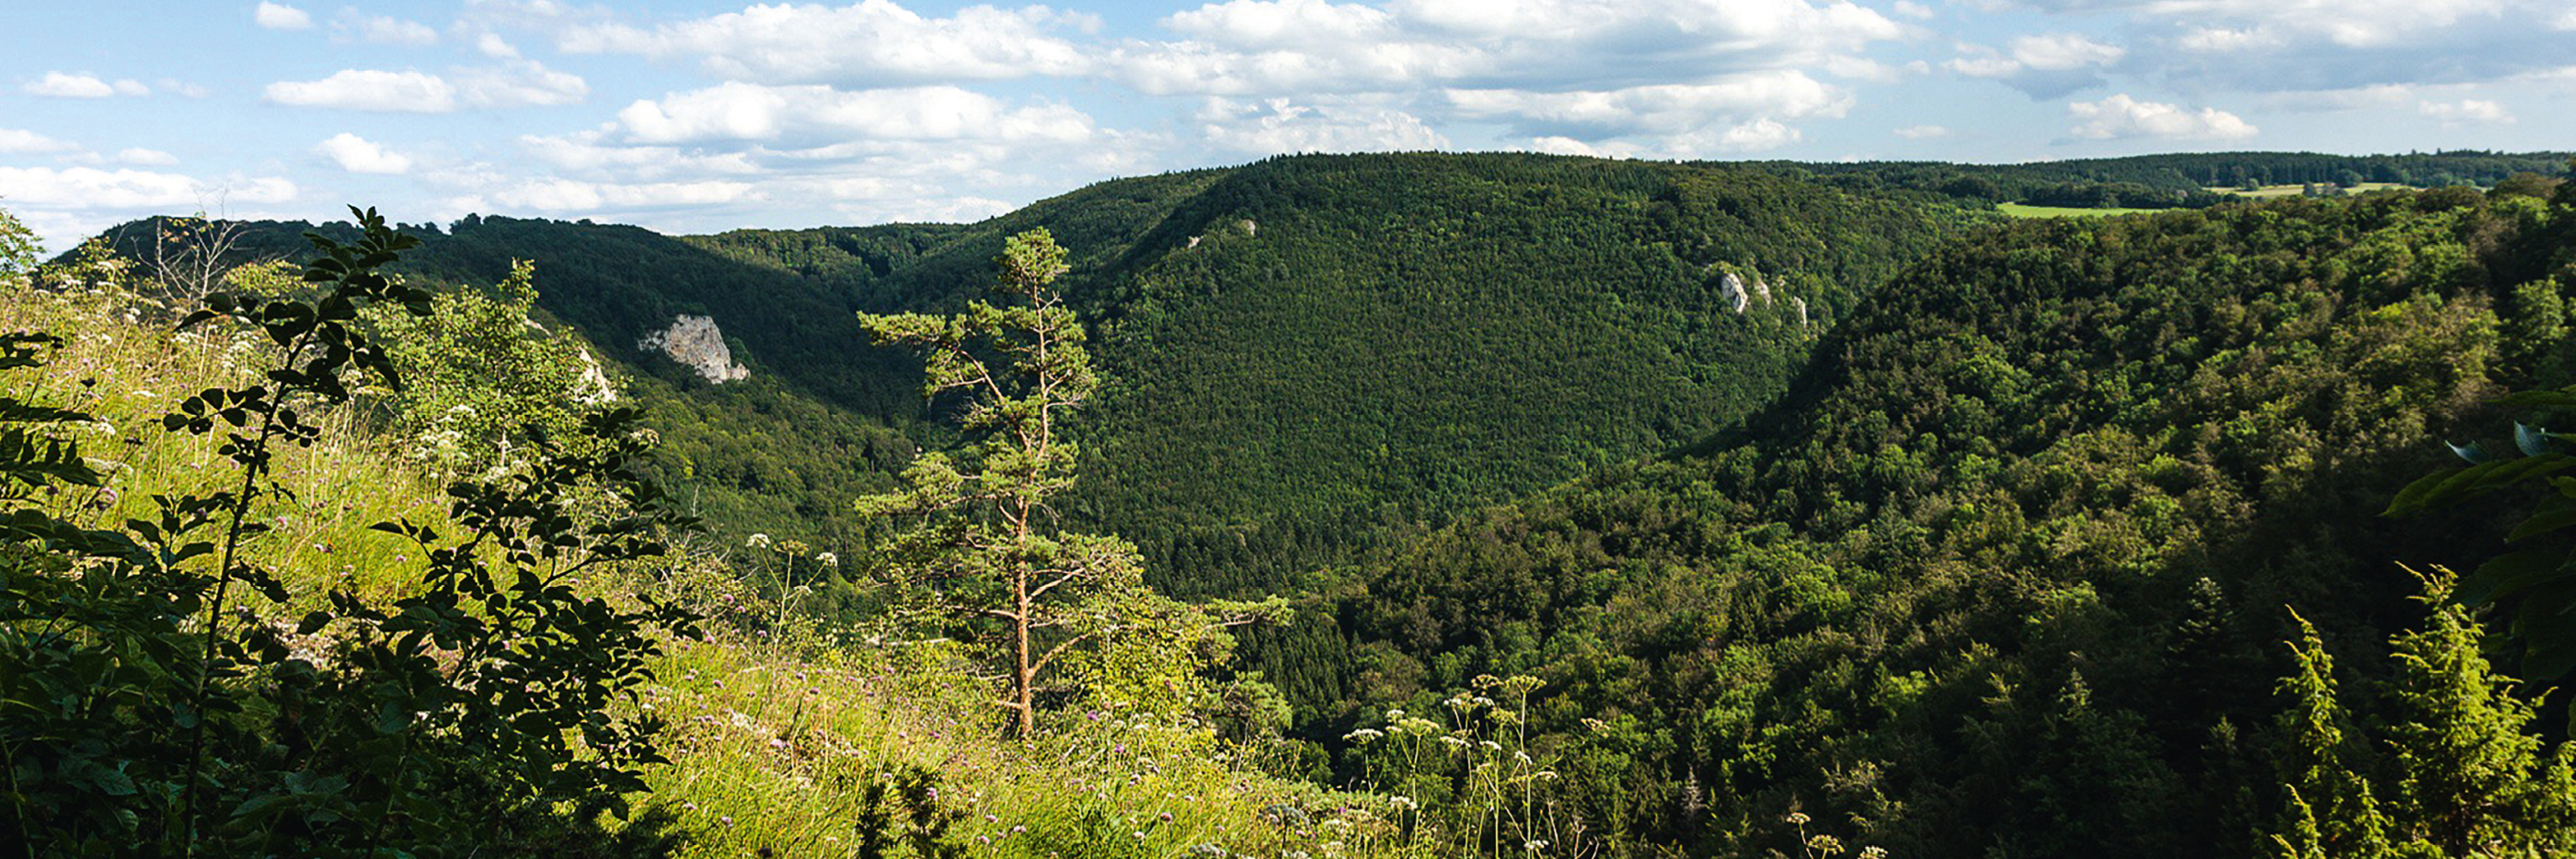 landschapsfoto van de Schwäbische Alb in de zomer, groene weide met boom en struikjes op de voorgrond, beboste hellingen op de achtergrond | mey®